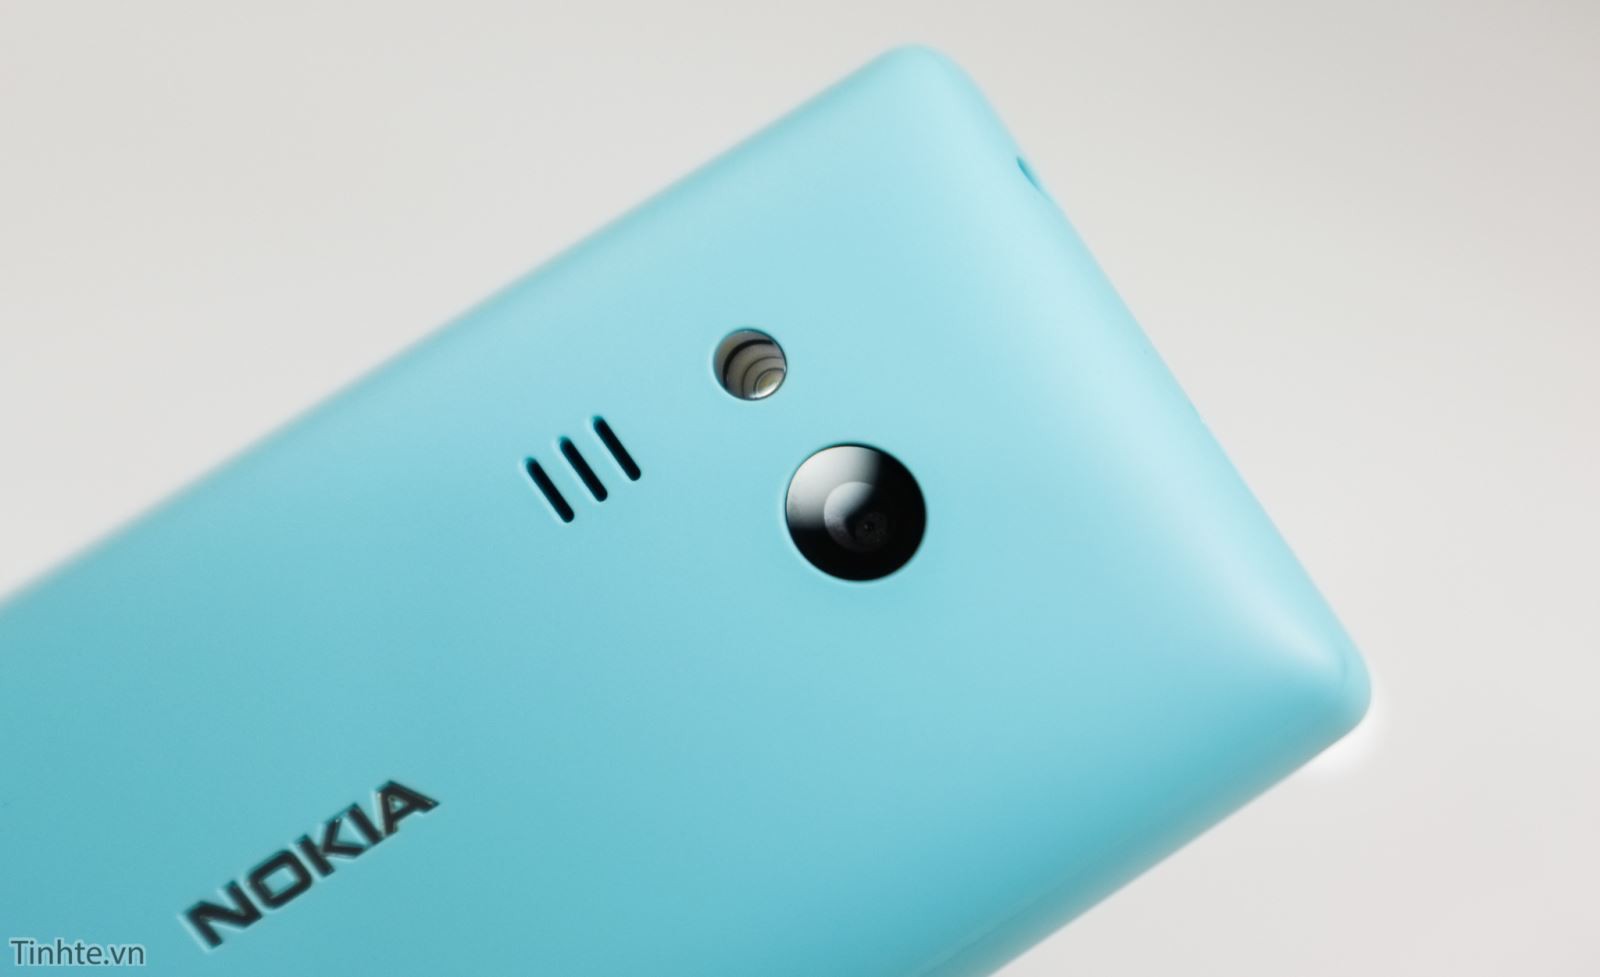 Cận cảnh chiếc Nokia 216 phiên bản màu xanh tuyệt đẹp 3